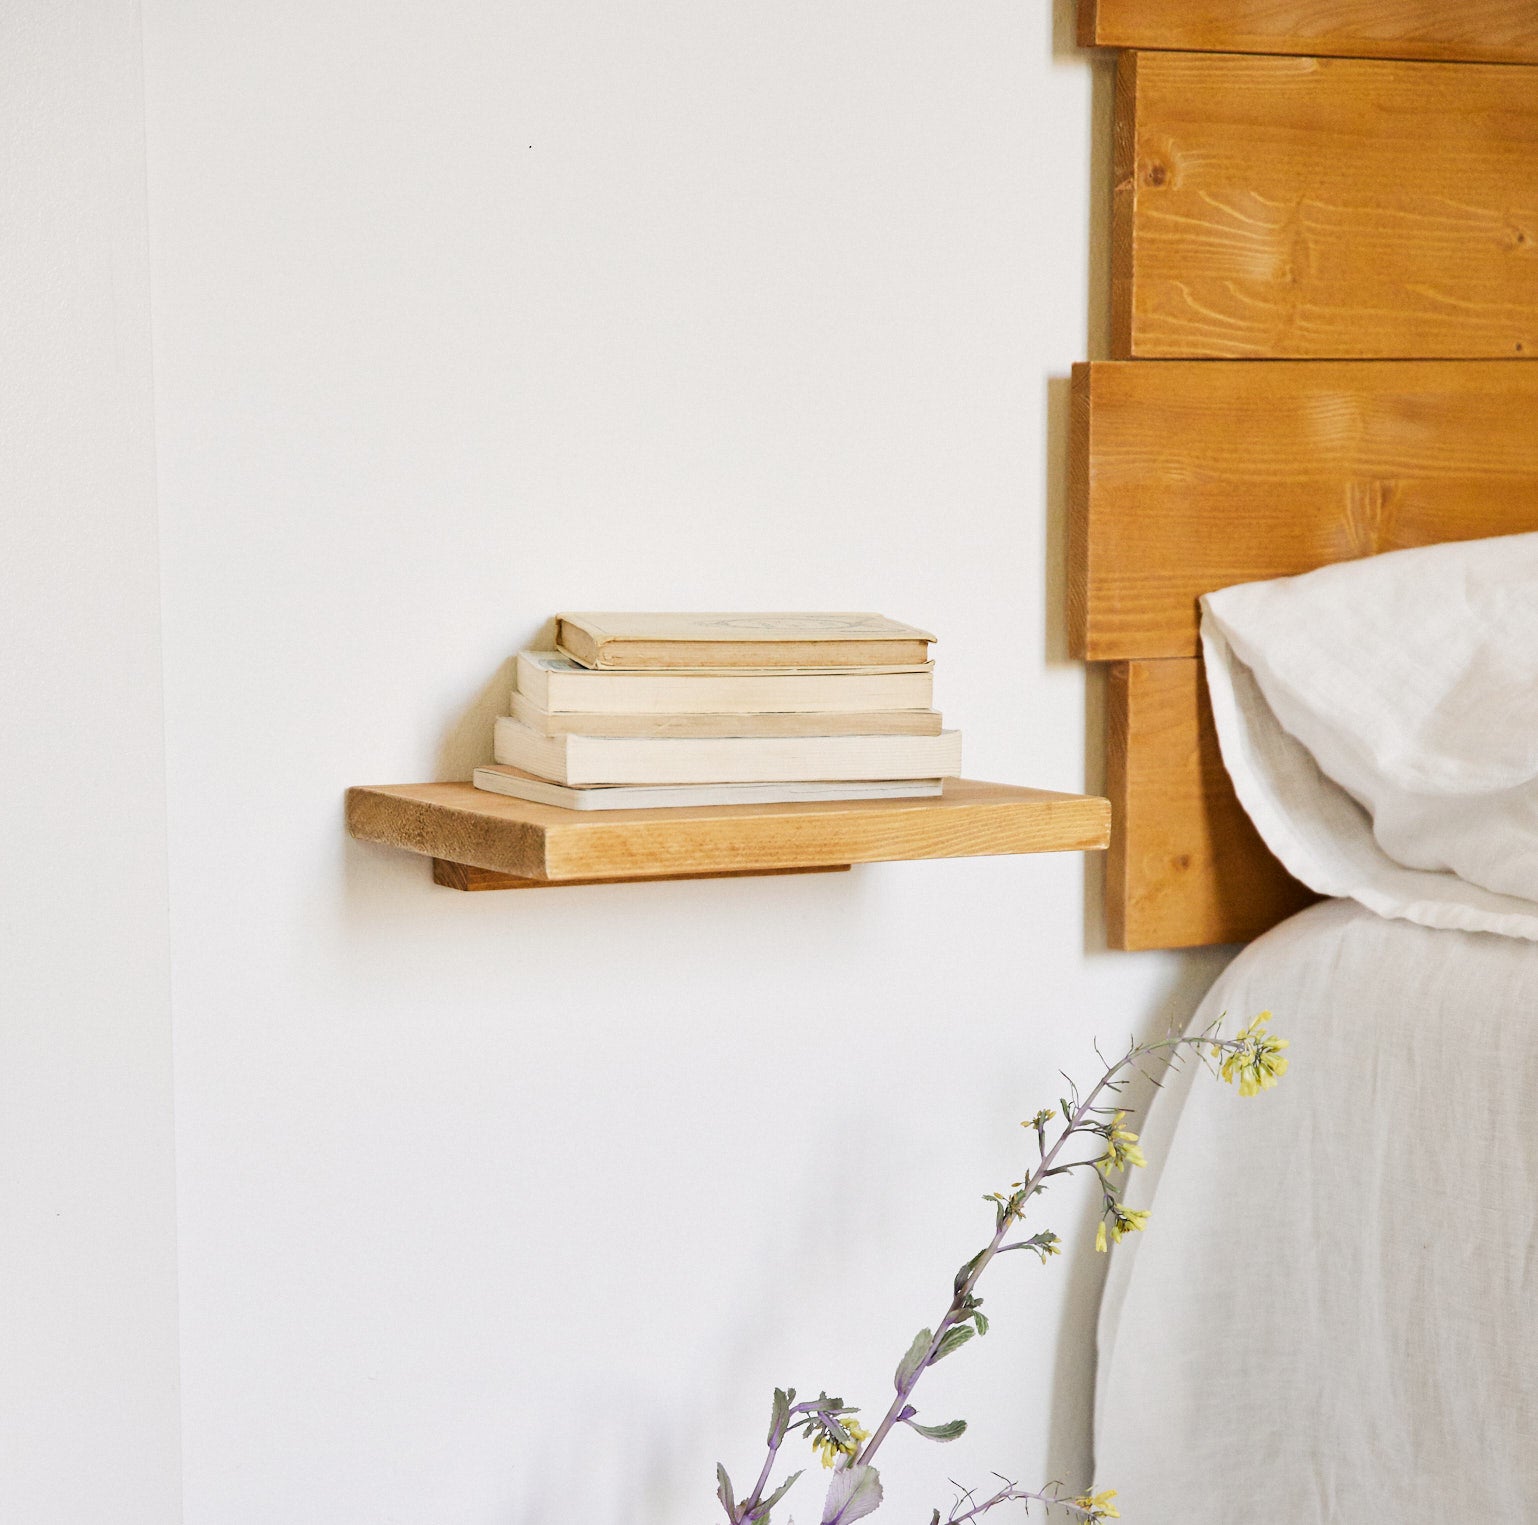 Balda de madera flotante como mesita de noche para tu habitación de invitados.